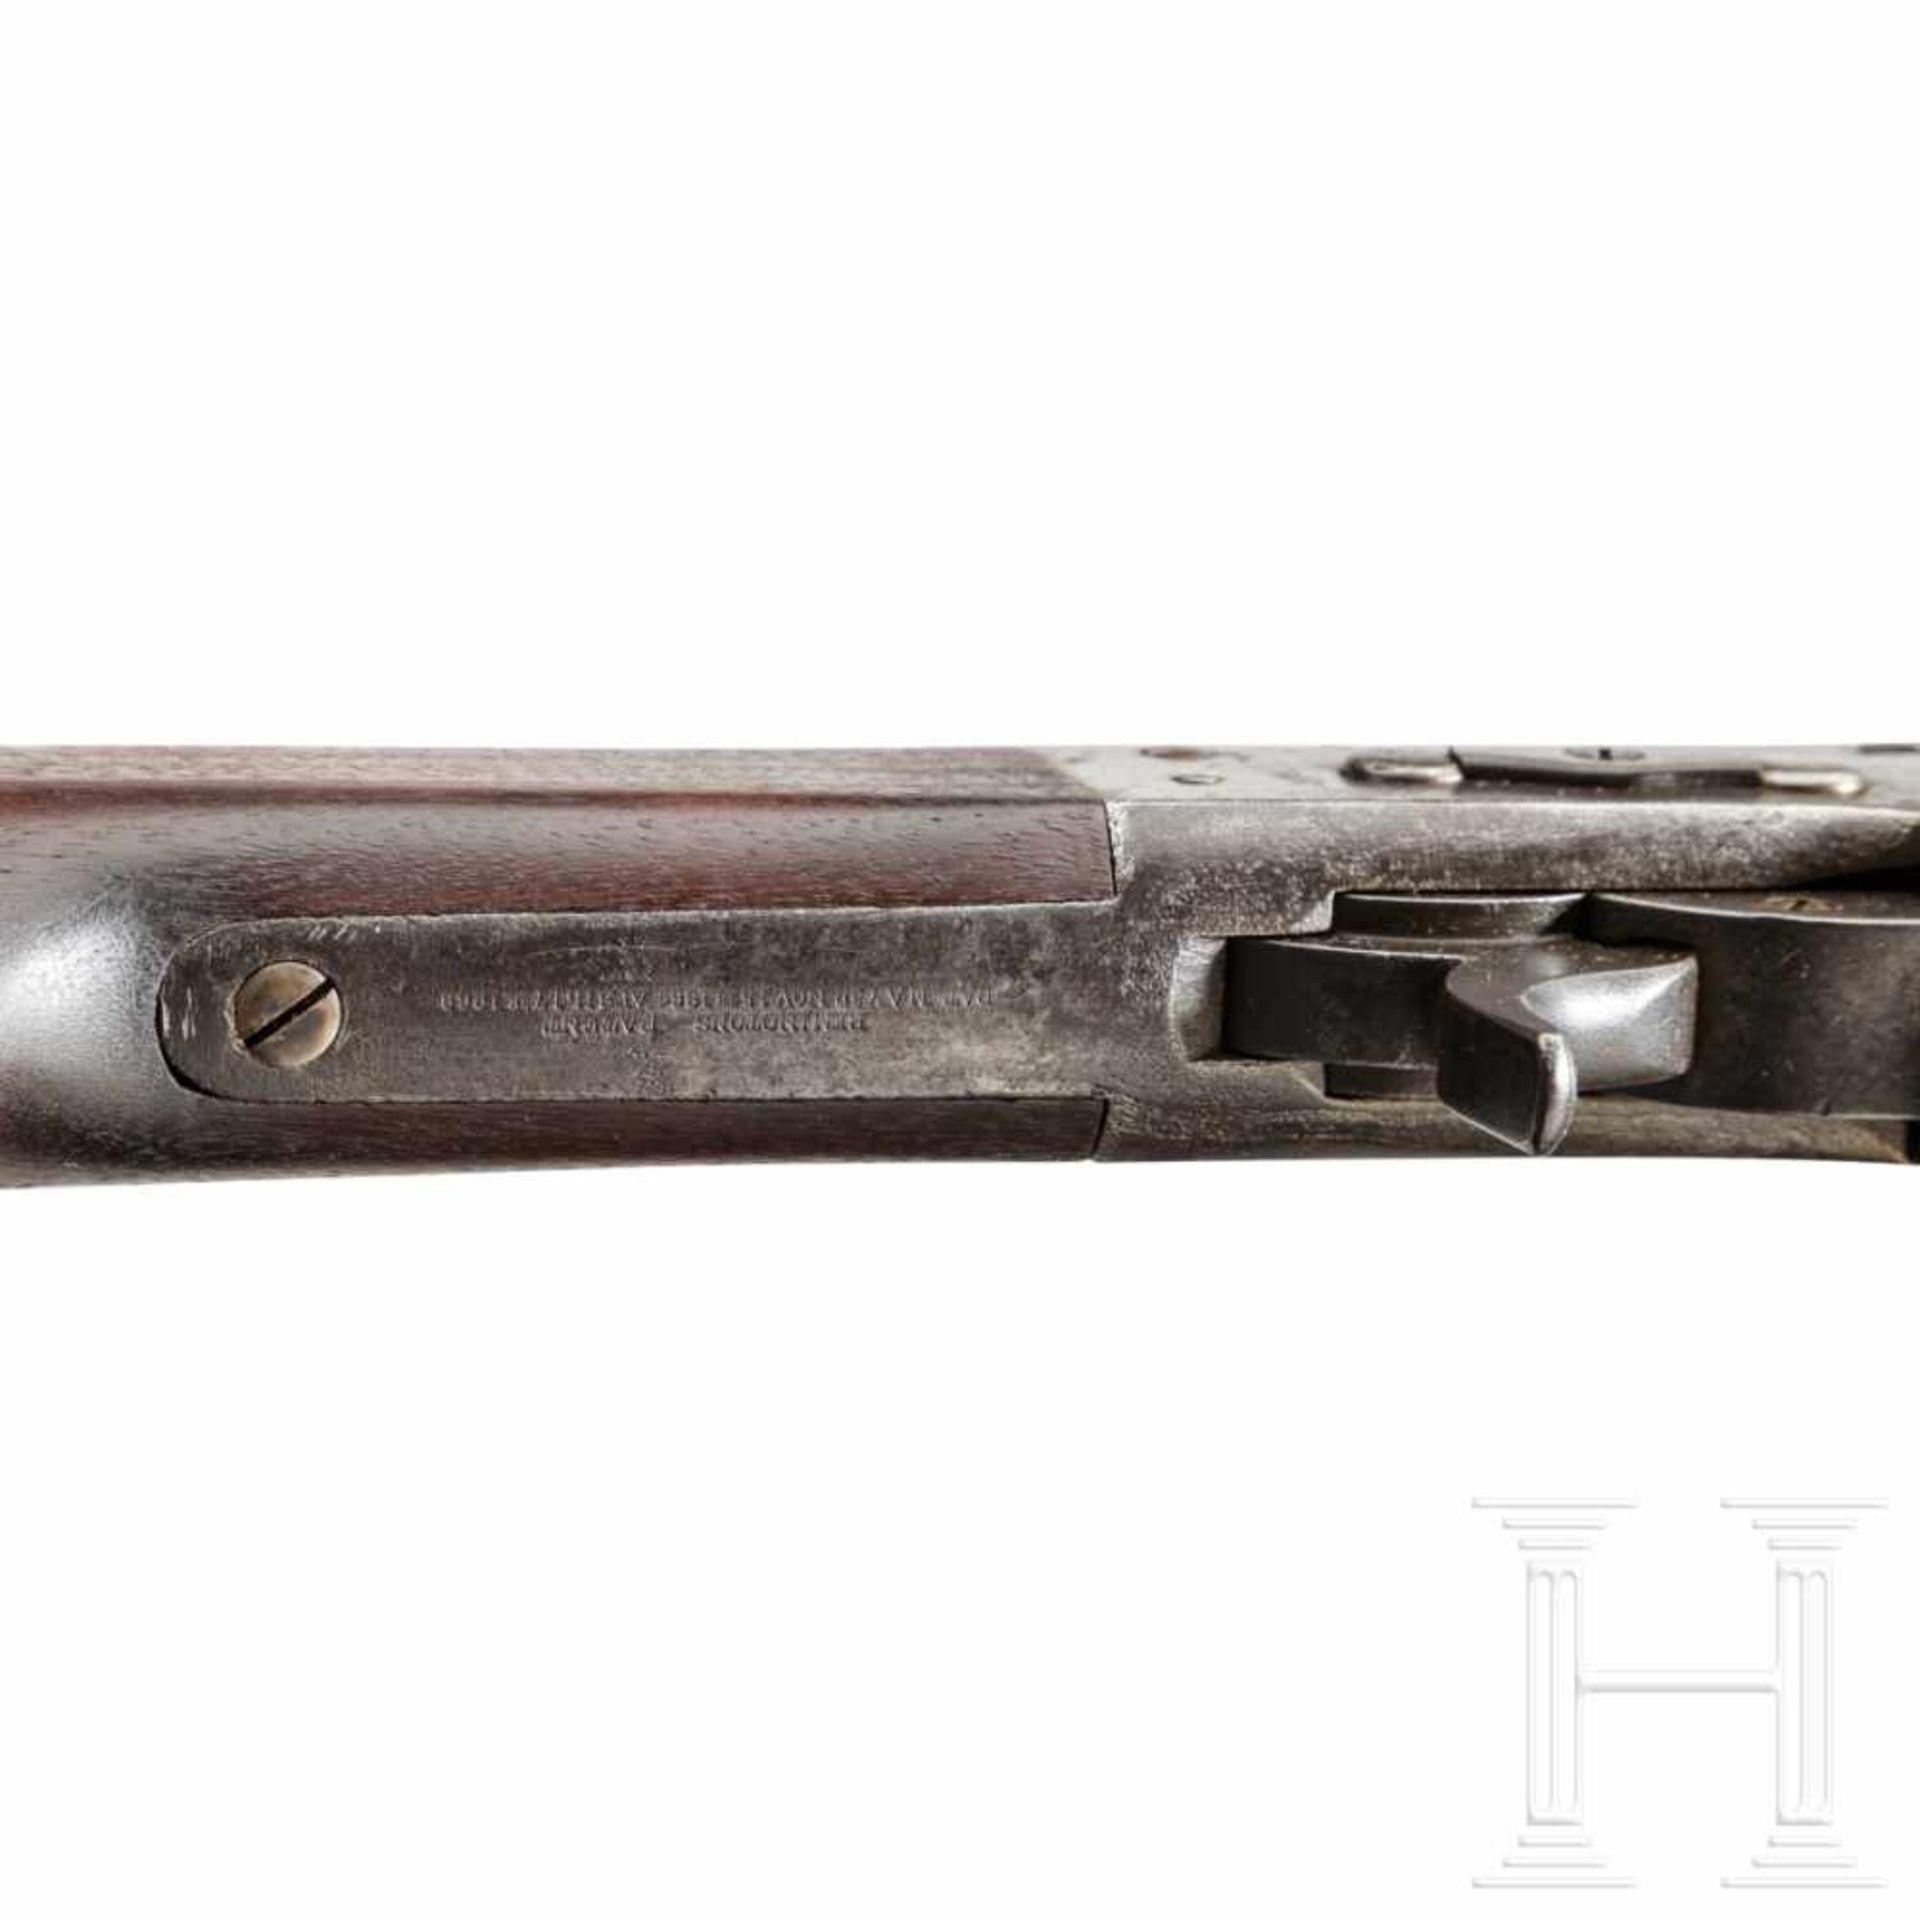 A Springfield Rifle, Model 1870 Rolling Block U.S. NavyKal. .50 CF, ohne Nr. Etwas rauer, dreifach - Bild 3 aus 3